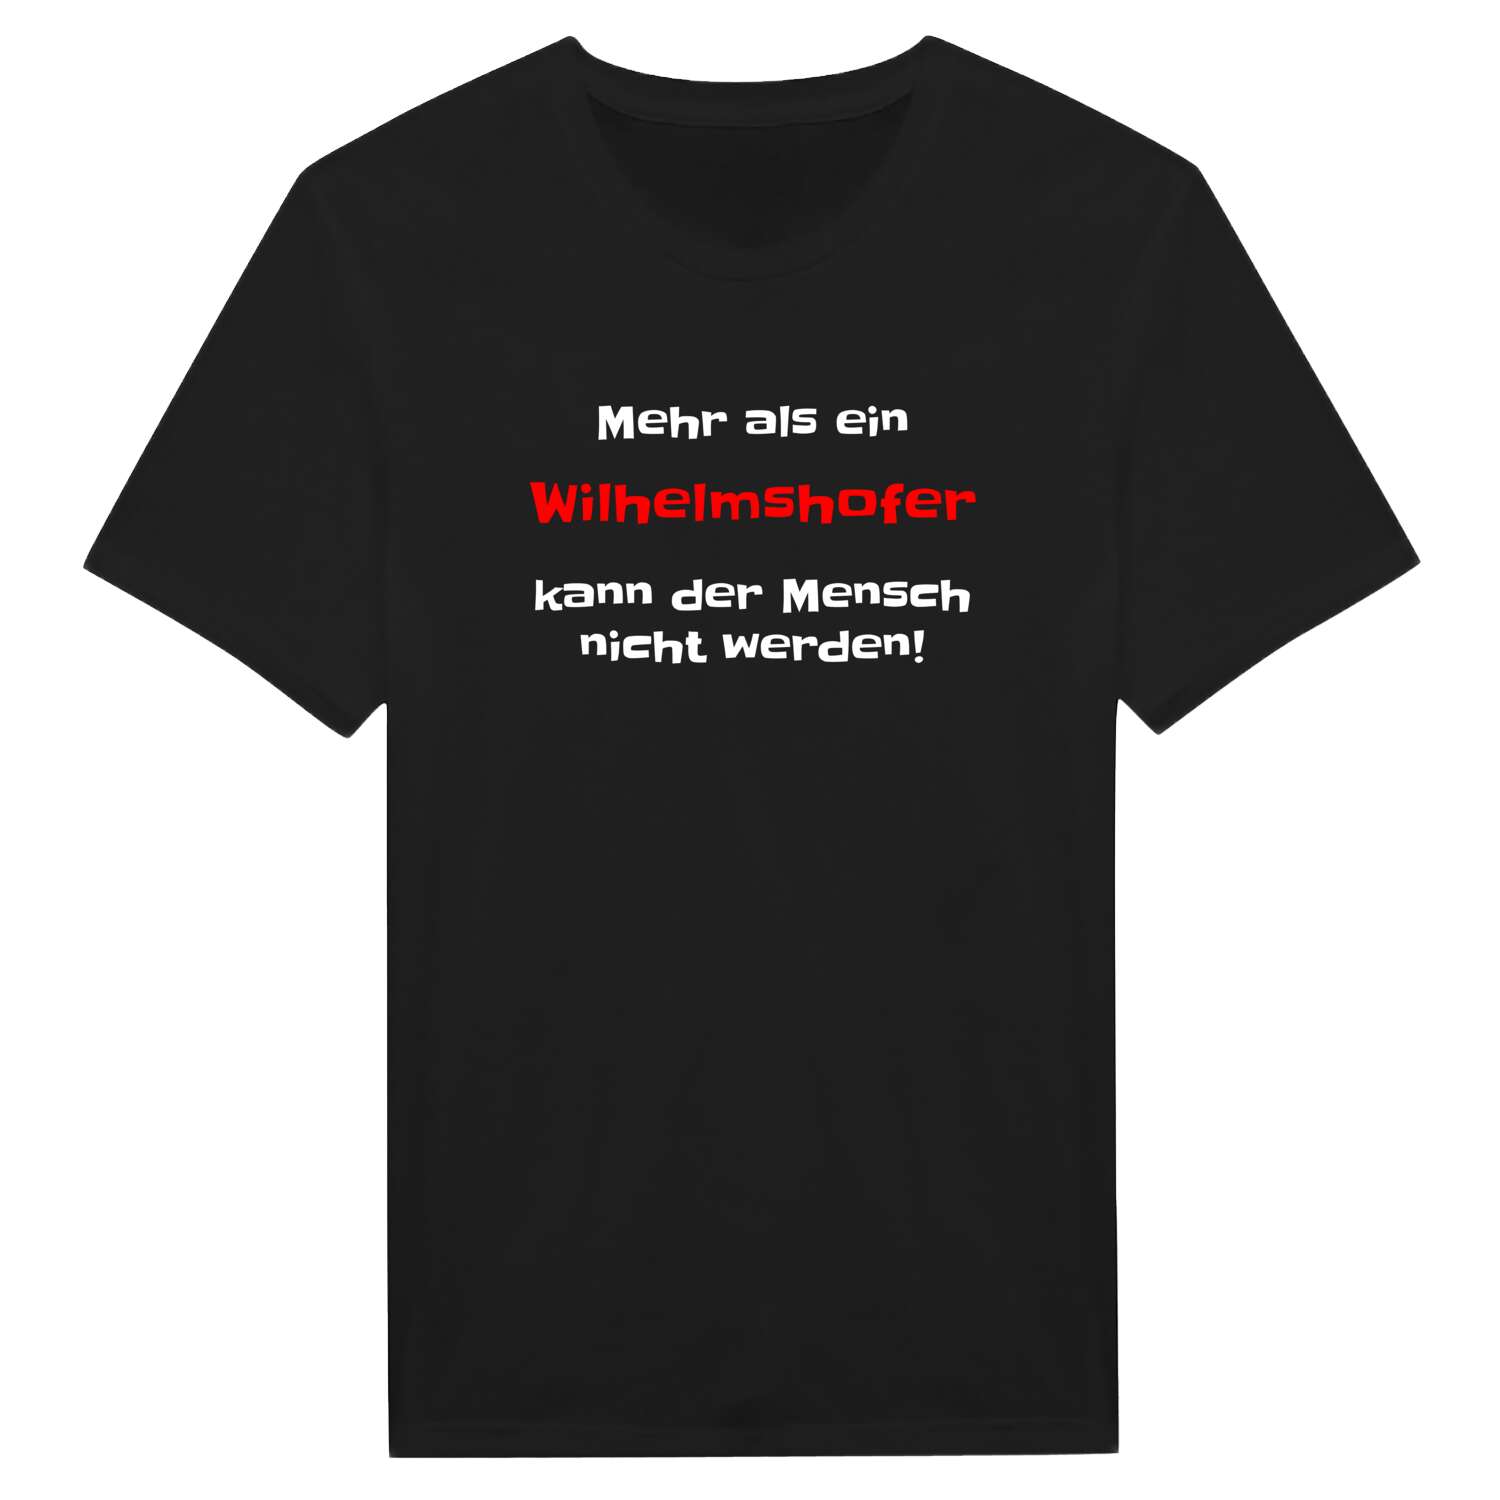 Wilhelmshof T-Shirt »Mehr als ein«